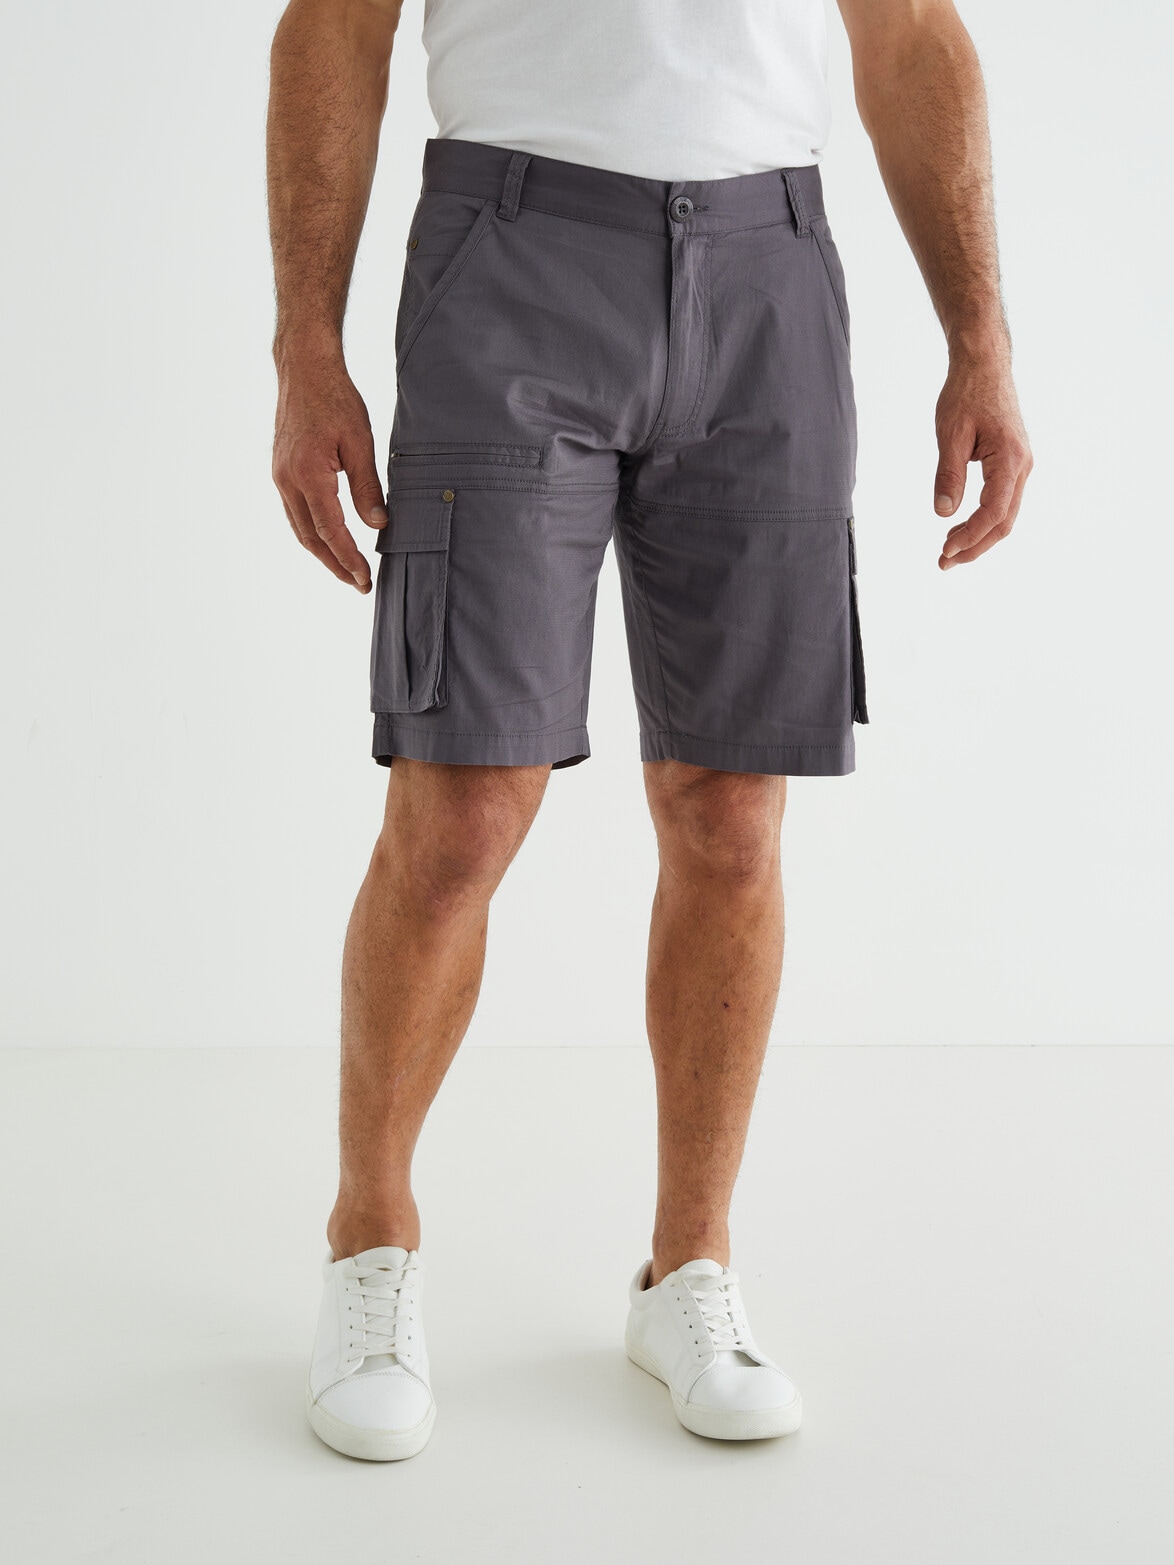 Logan Decoy Short, Charcoal - Shorts